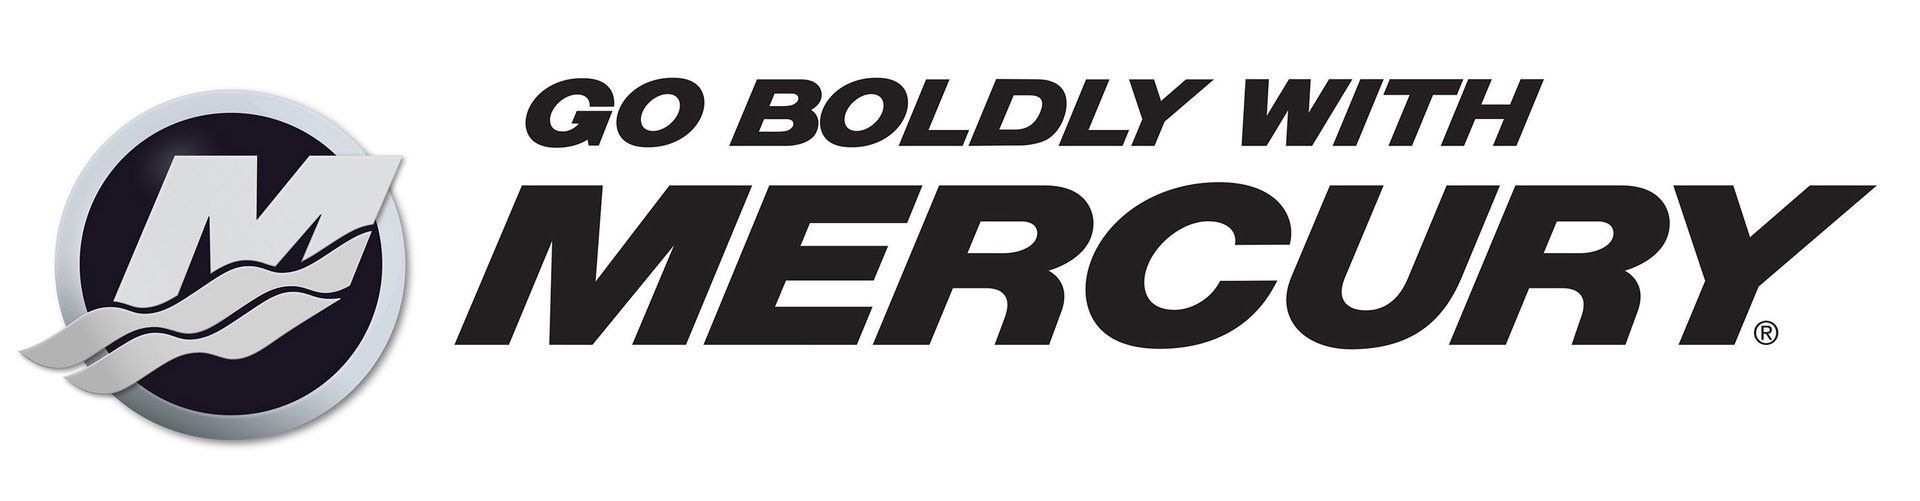 Go boldly with Mercury Logo